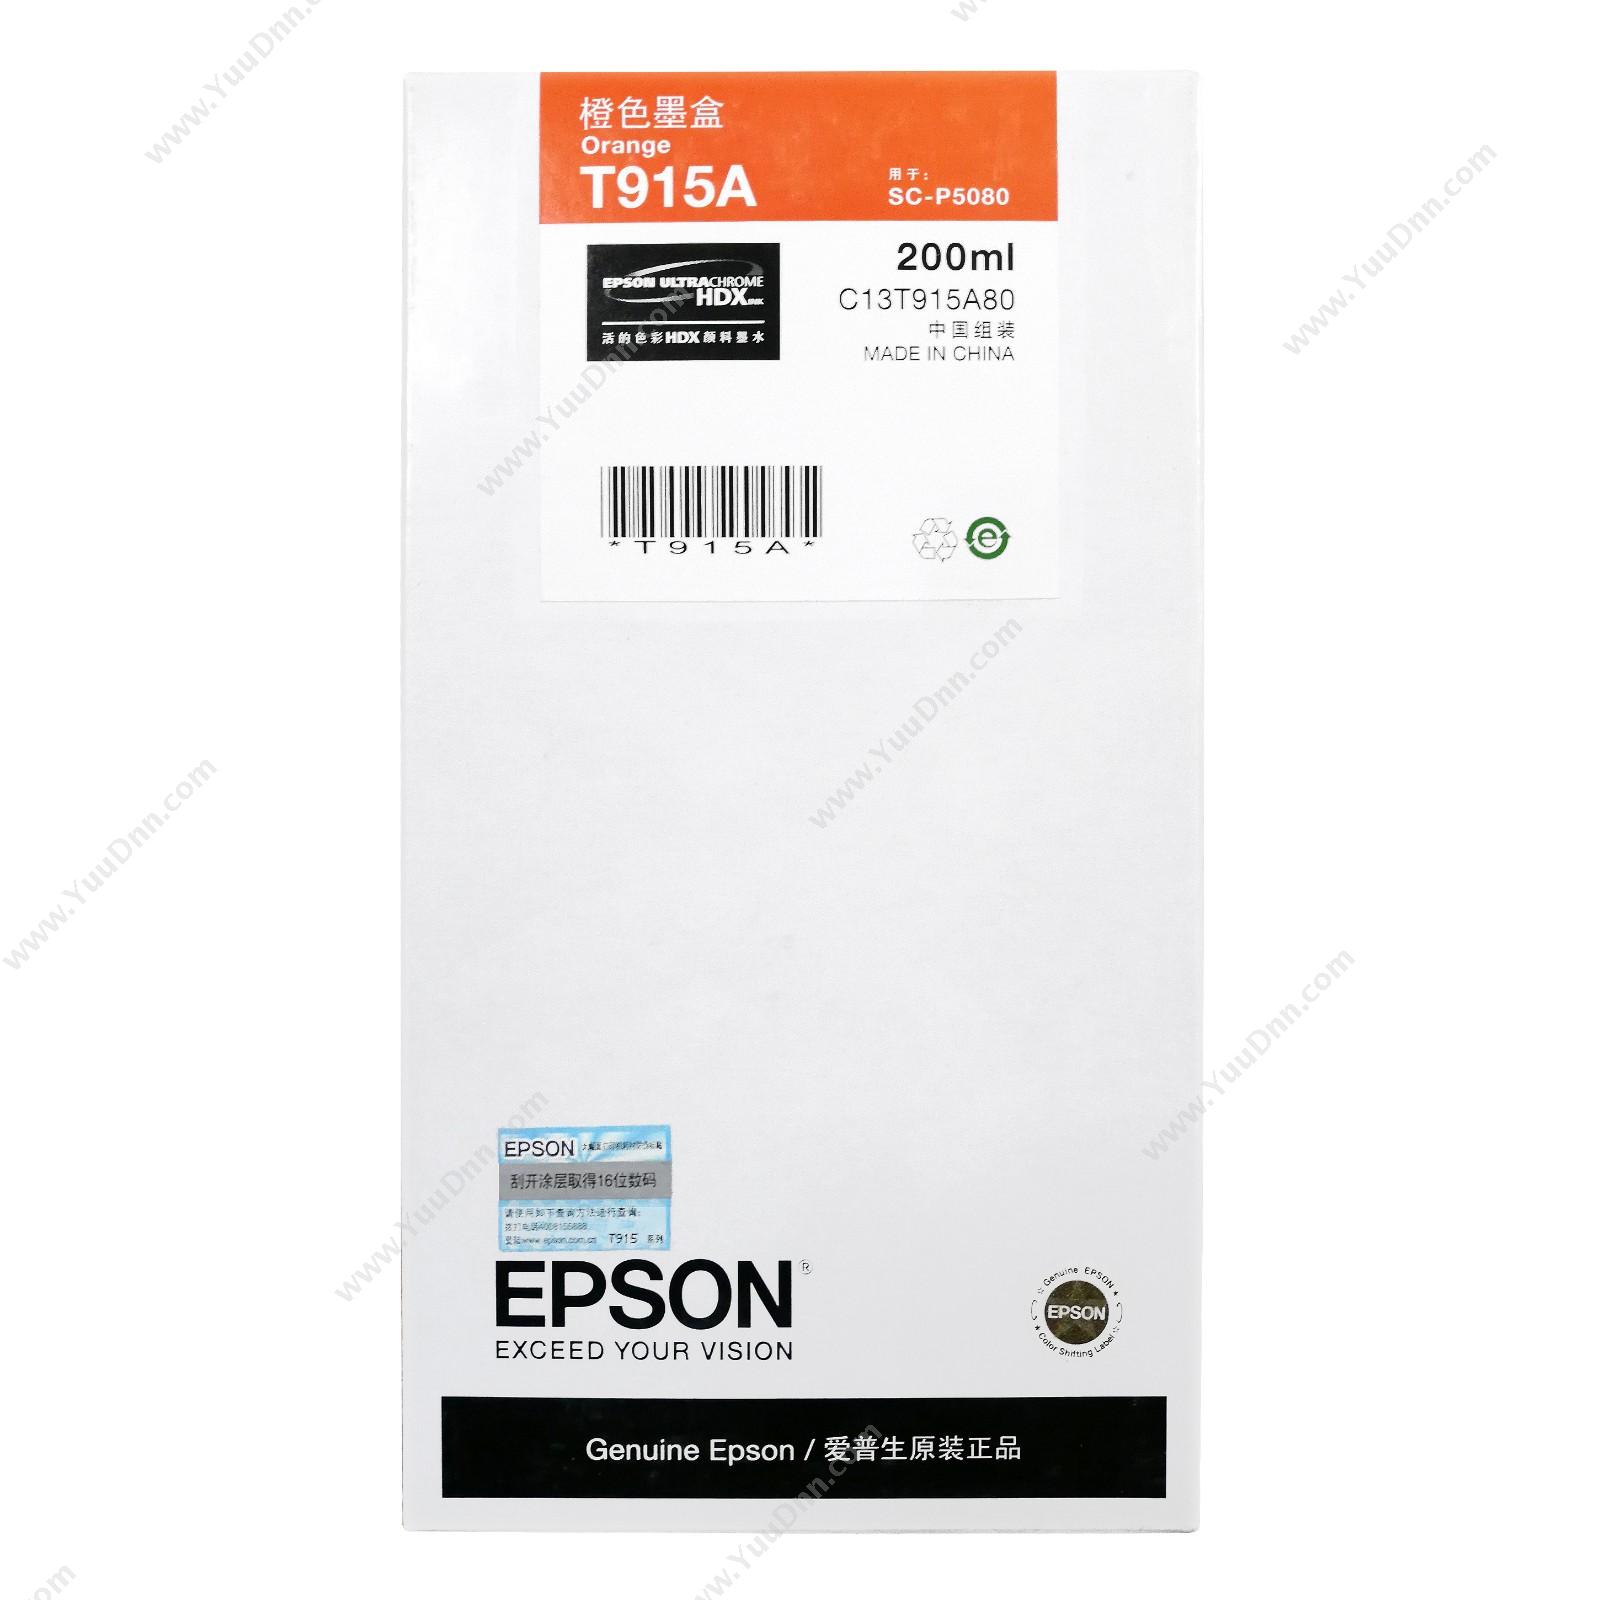 爱普生 EpsonP5080橙色200ml(C13T915A80)墨盒